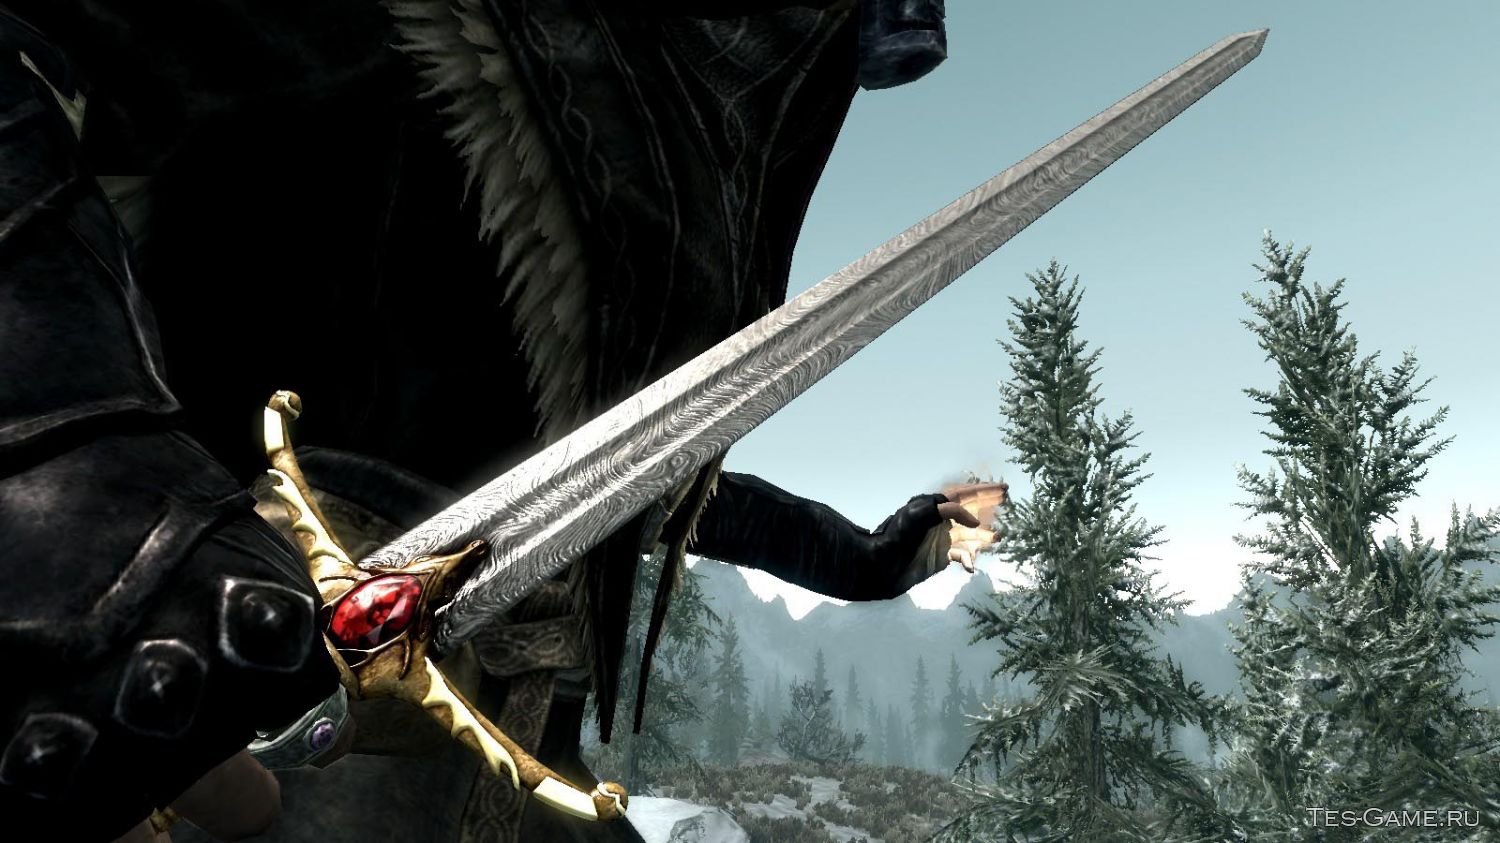 Включи игру мечей. Скайрим мод на Драконий меч. Моды для Elder Scrolls 5: Skyrim оружие. Меч Алукарда скайрим.